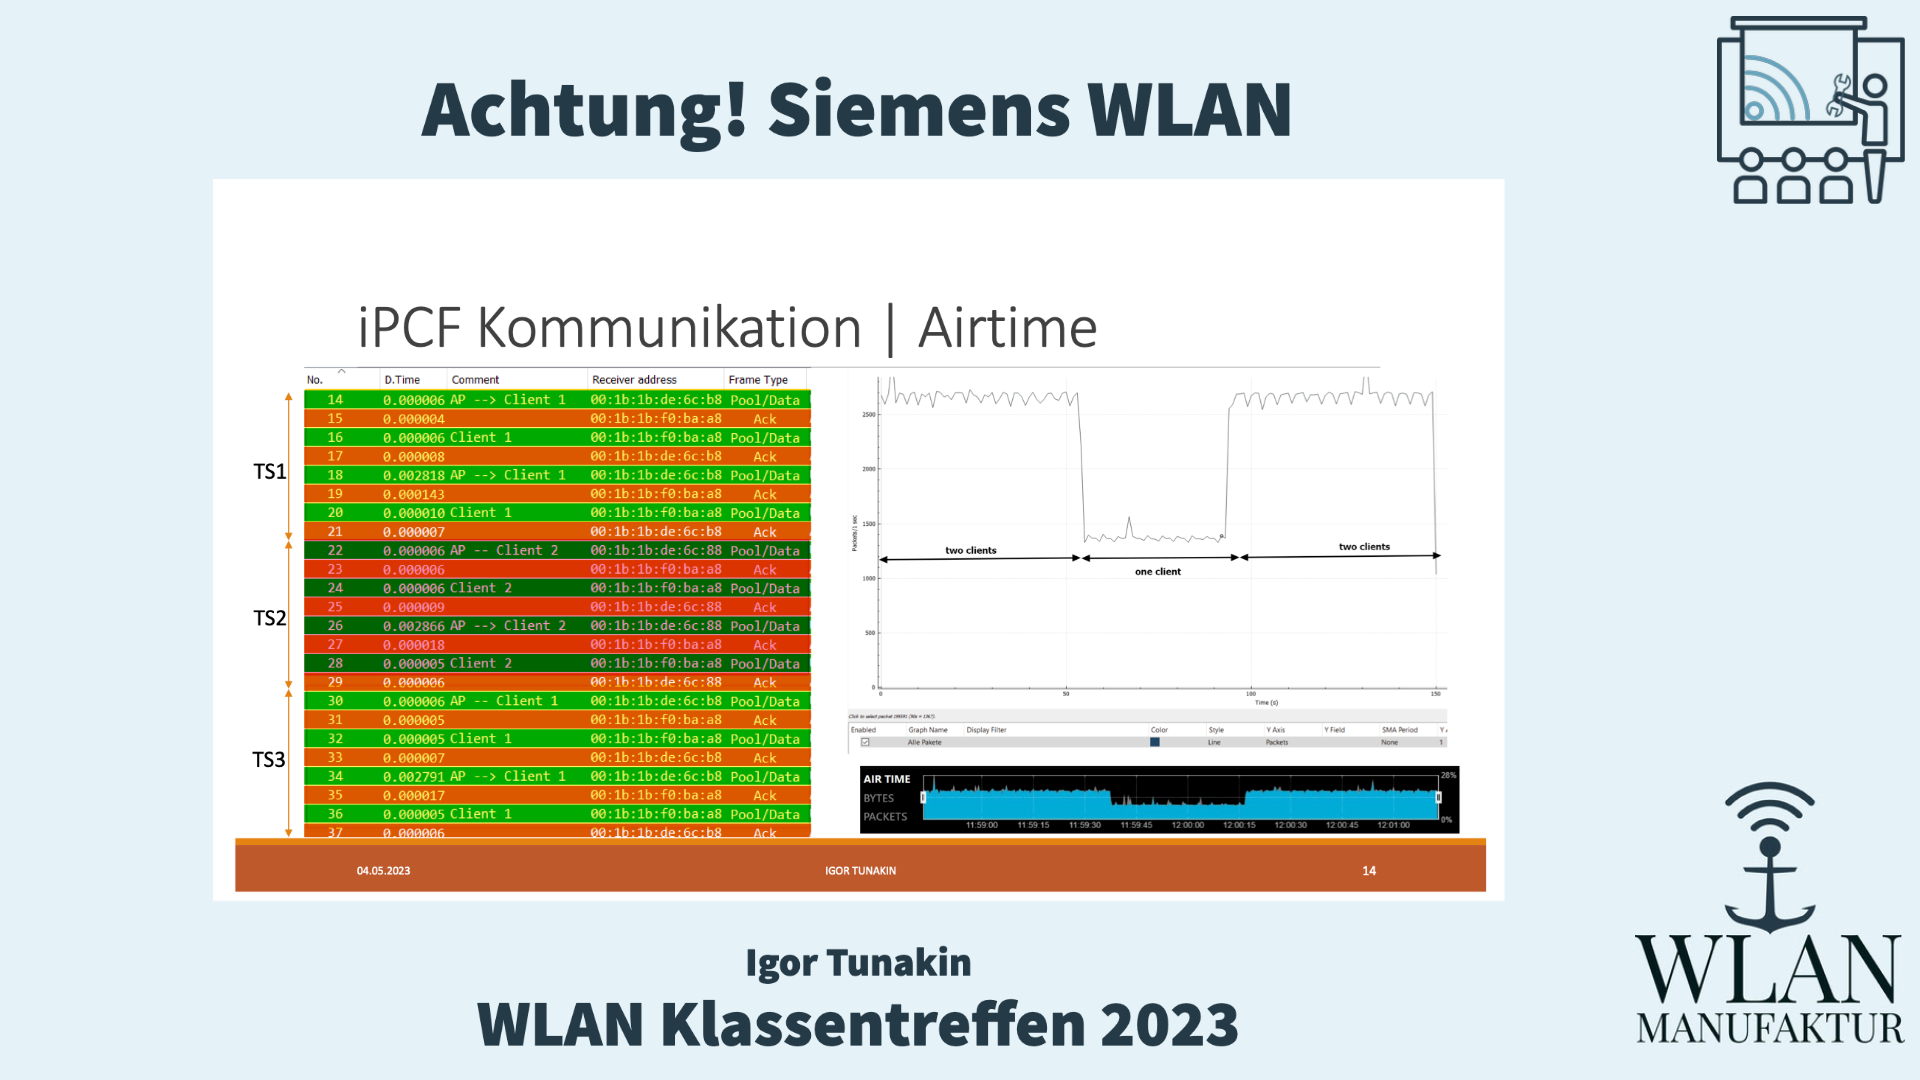 Video laden: Aufzeichnung der Präsentation vom WLAN Klassentreffen - Achtung! Siemens WLAN